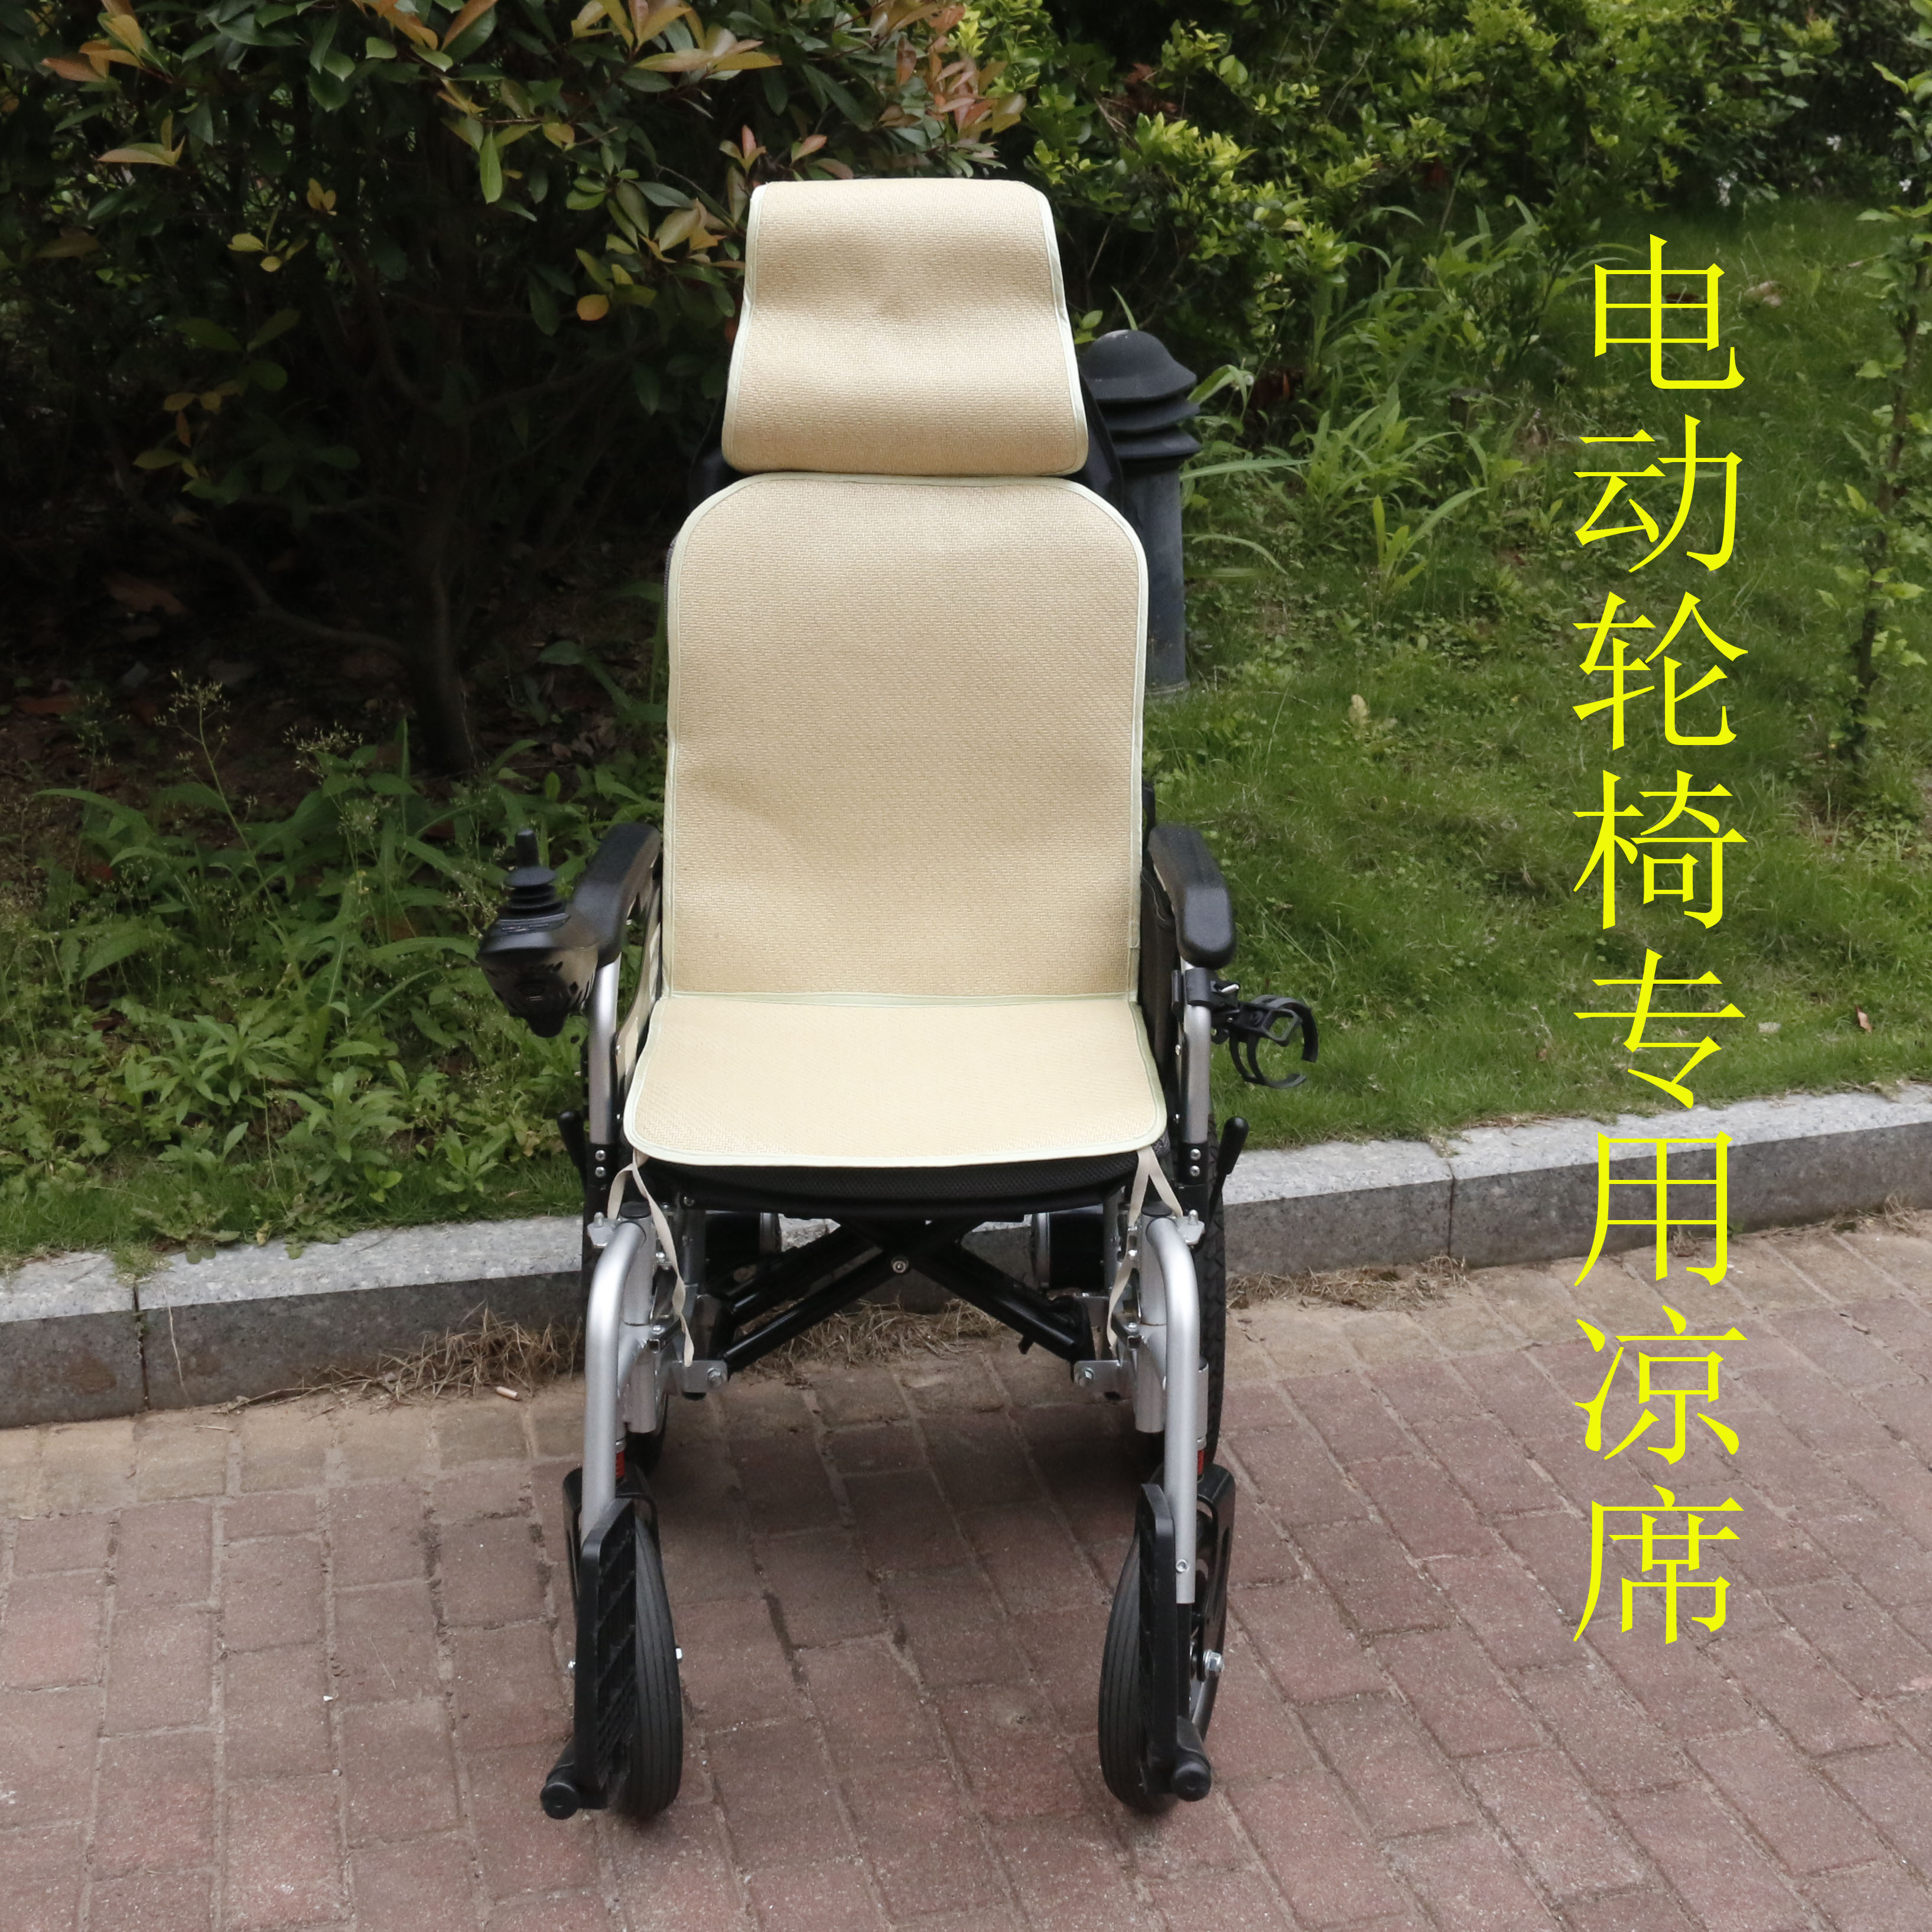 夏季轮椅坐垫凉垫折叠轻便老人残疾人手推车代步车凉席竹藤席垫子